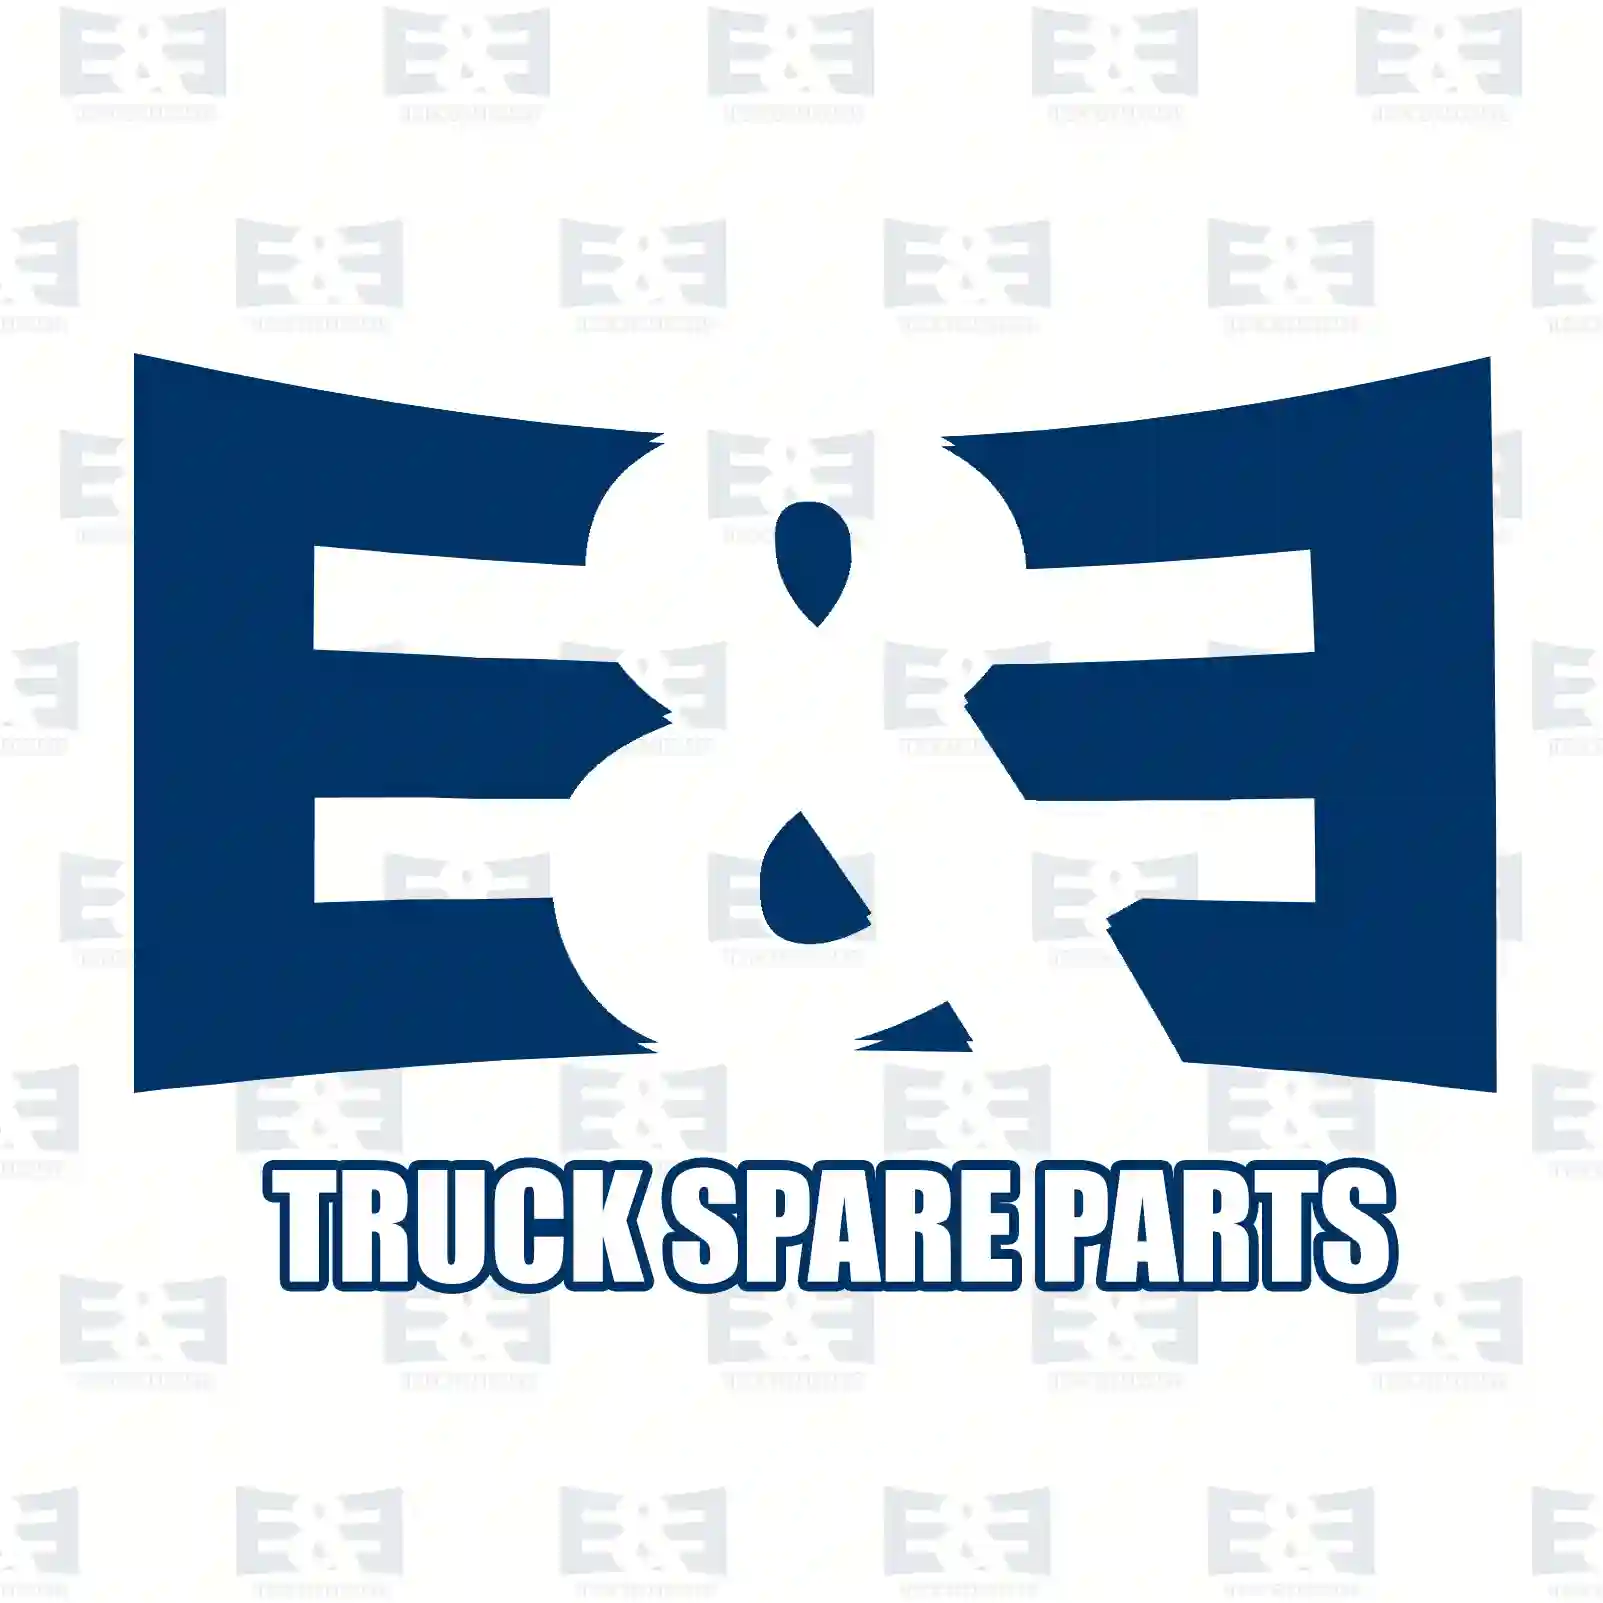 Wear indicator kit, 2E2293219, #YOK ||  2E2293219 E&E Truck Spare Parts | Truck Spare Parts, Auotomotive Spare Parts Wear indicator kit, 2E2293219, #YOK ||  2E2293219 E&E Truck Spare Parts | Truck Spare Parts, Auotomotive Spare Parts